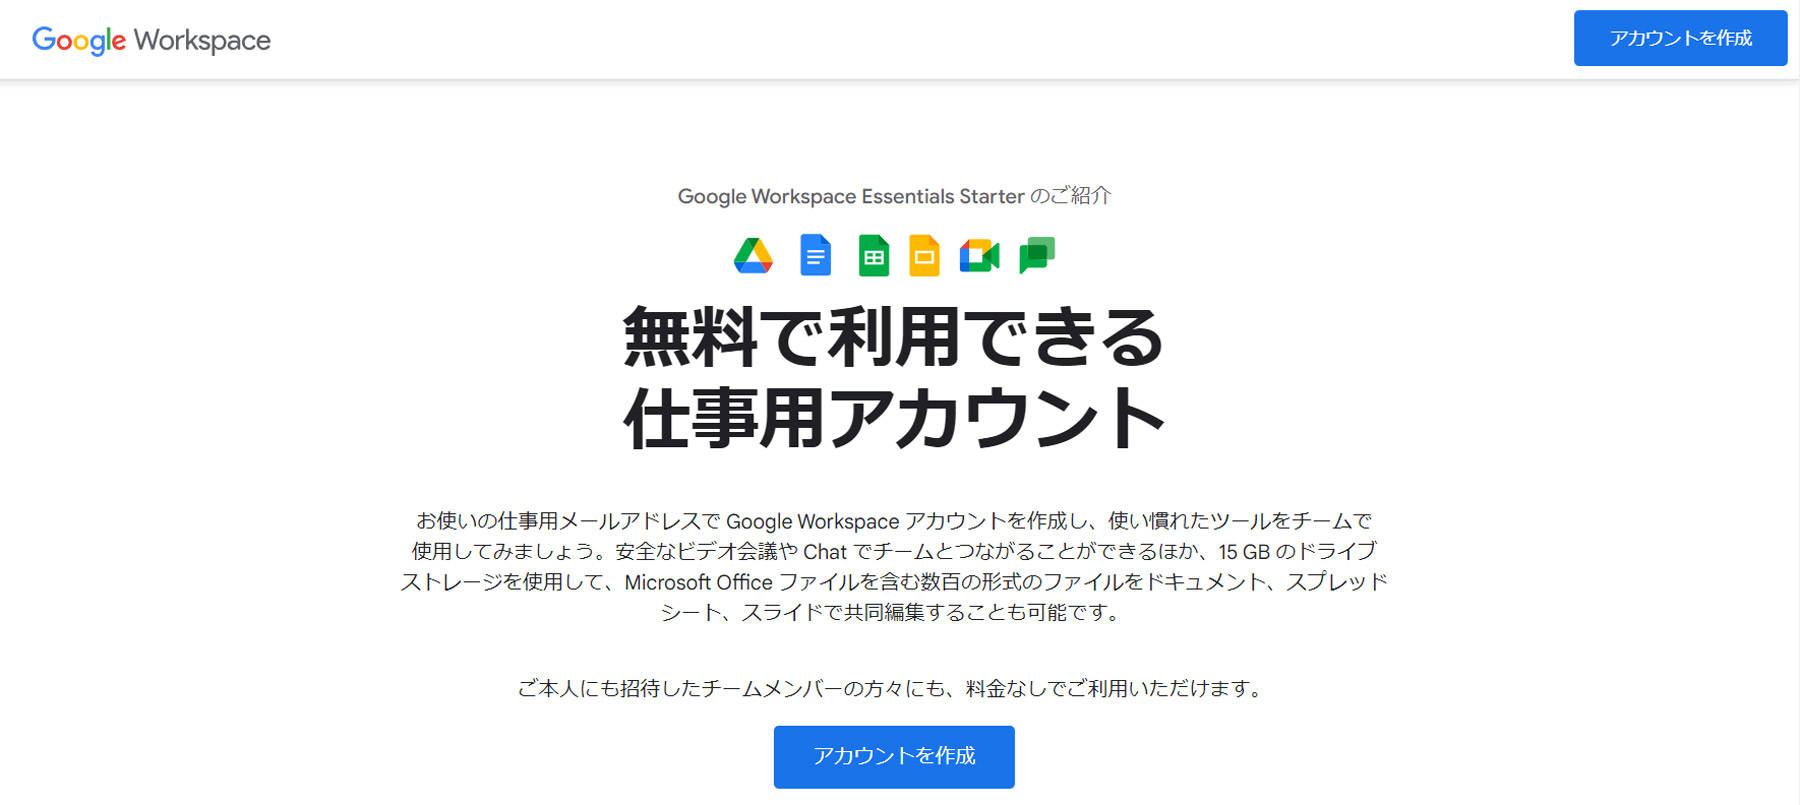 Google Workspace Essentials Starter公式Webサイト